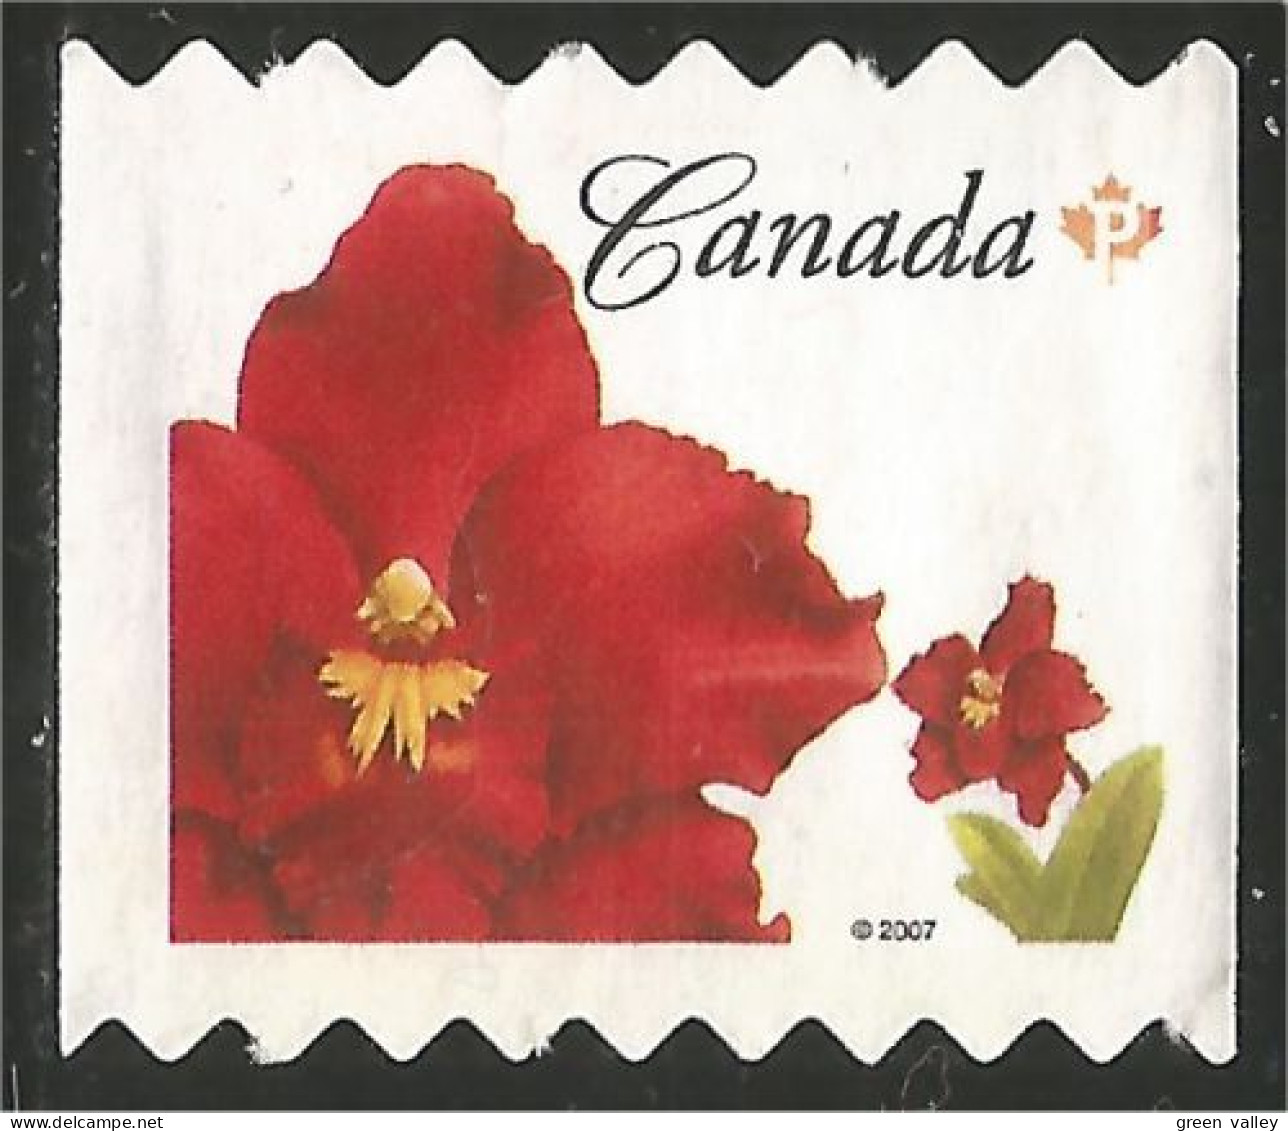 Canada Island Red Rouge Mint No Gum (17) - Oblitérés